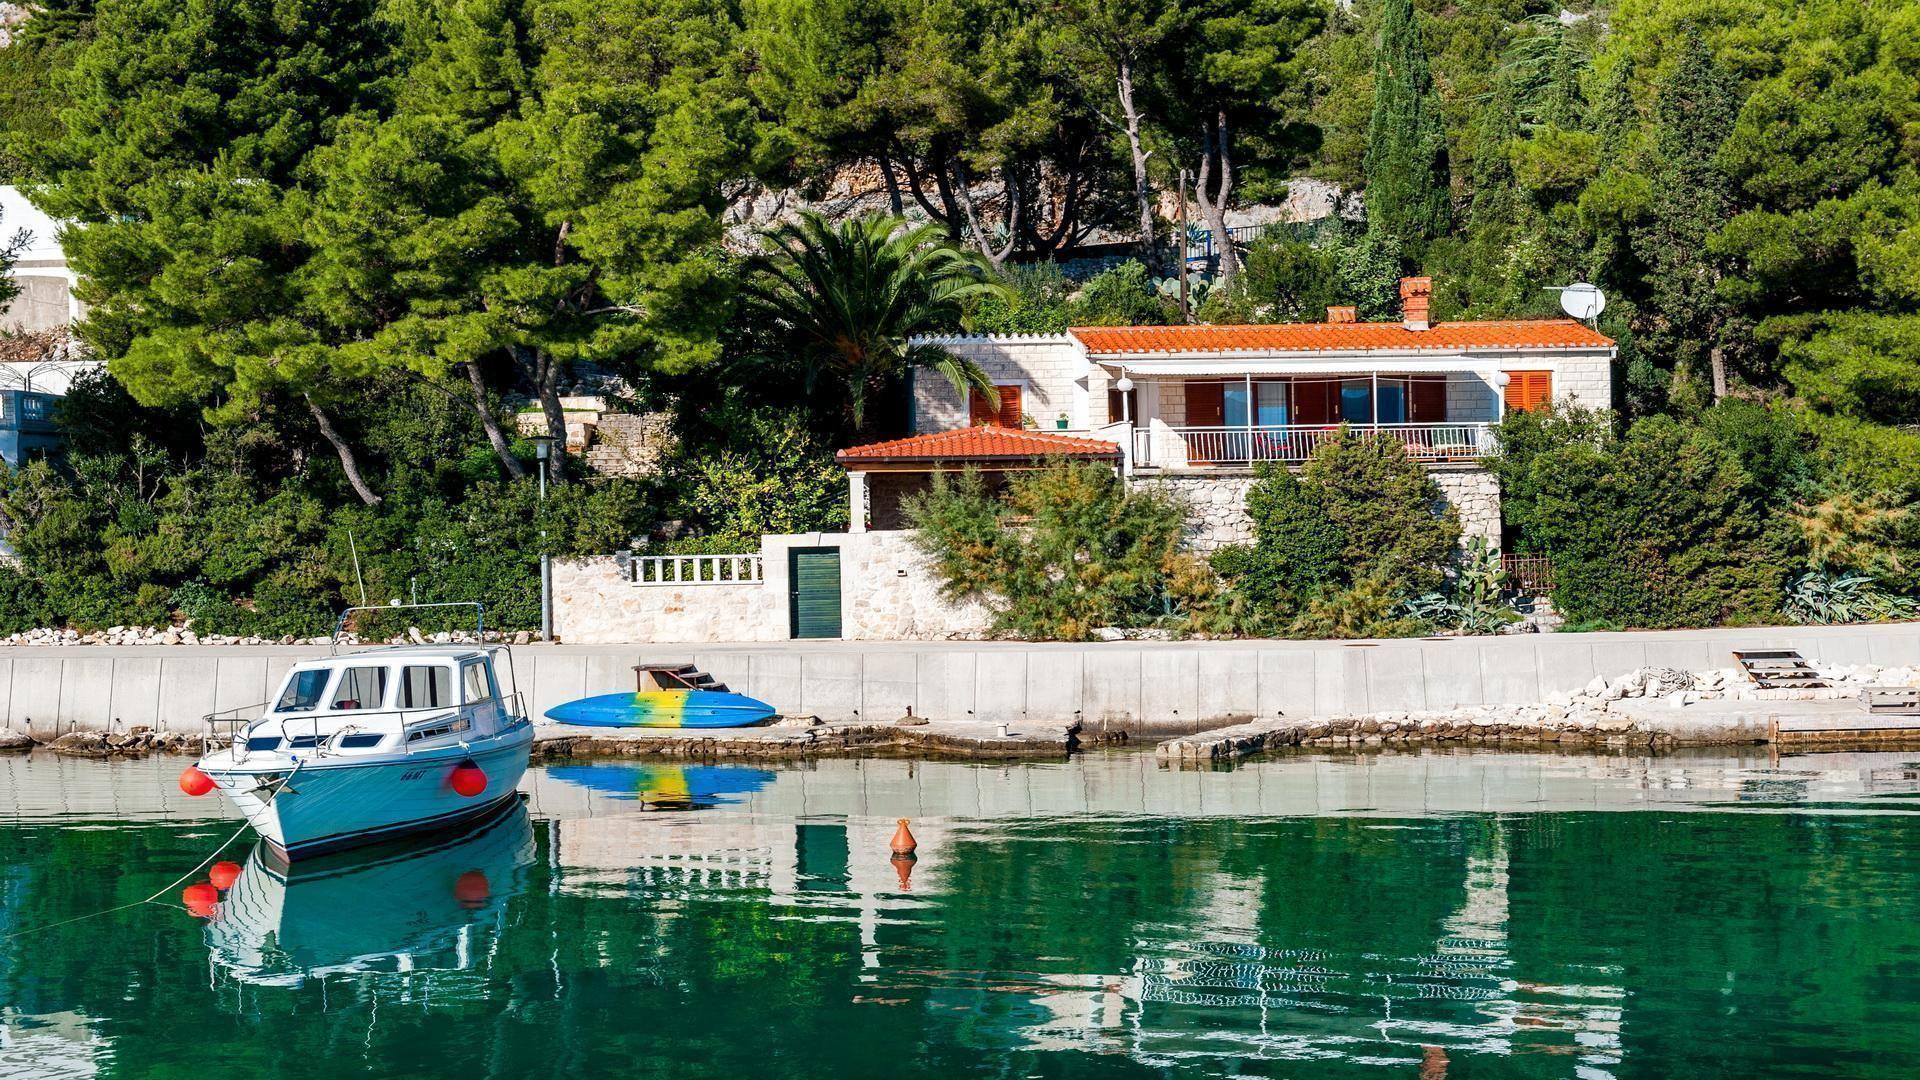 Ferienhaus mit Terrasse am Strand mit Bootsteg Ferienhaus in Kroatien